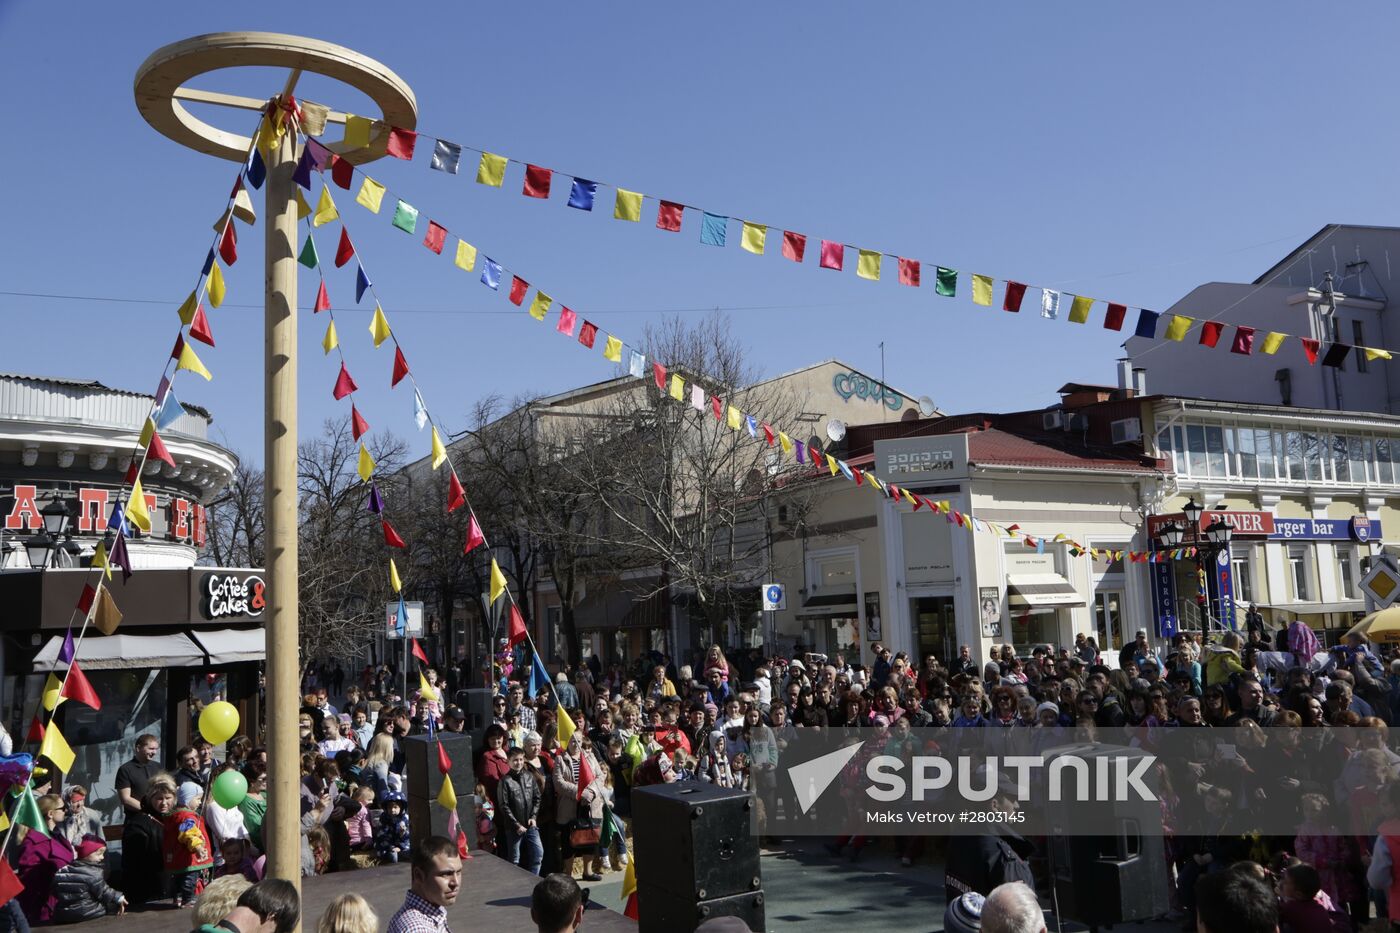 Pancake Week celebrations in Simferopol